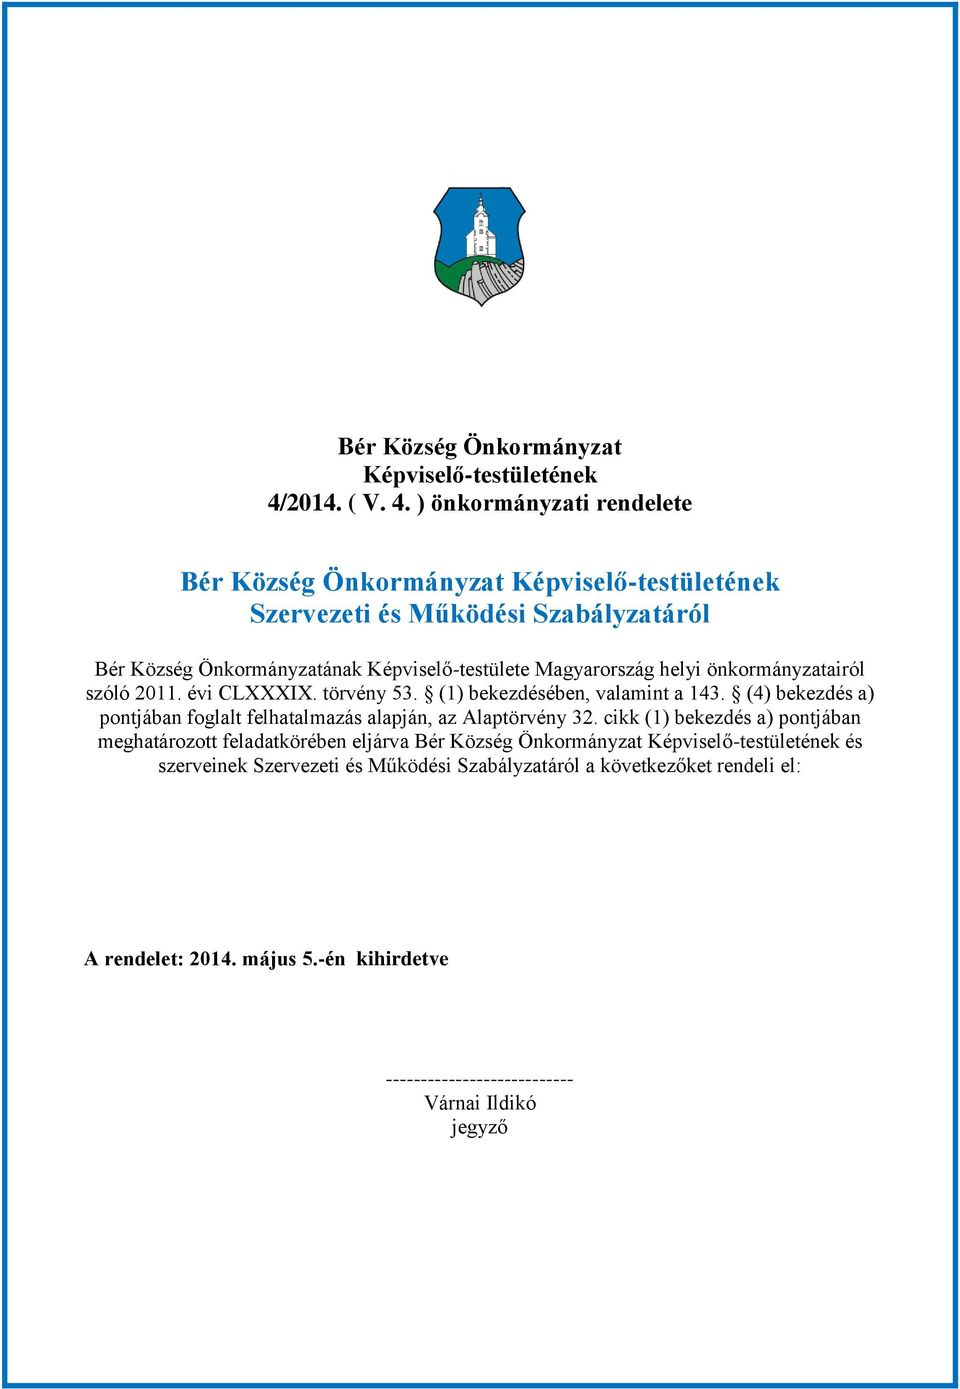 ) önkormányzati rendelete Bér Község Önkormányzat Képviselő-testületének Szervezeti és Működési Szabályzatáról Bér Község Önkormányzatának Képviselő-testülete Magyarország